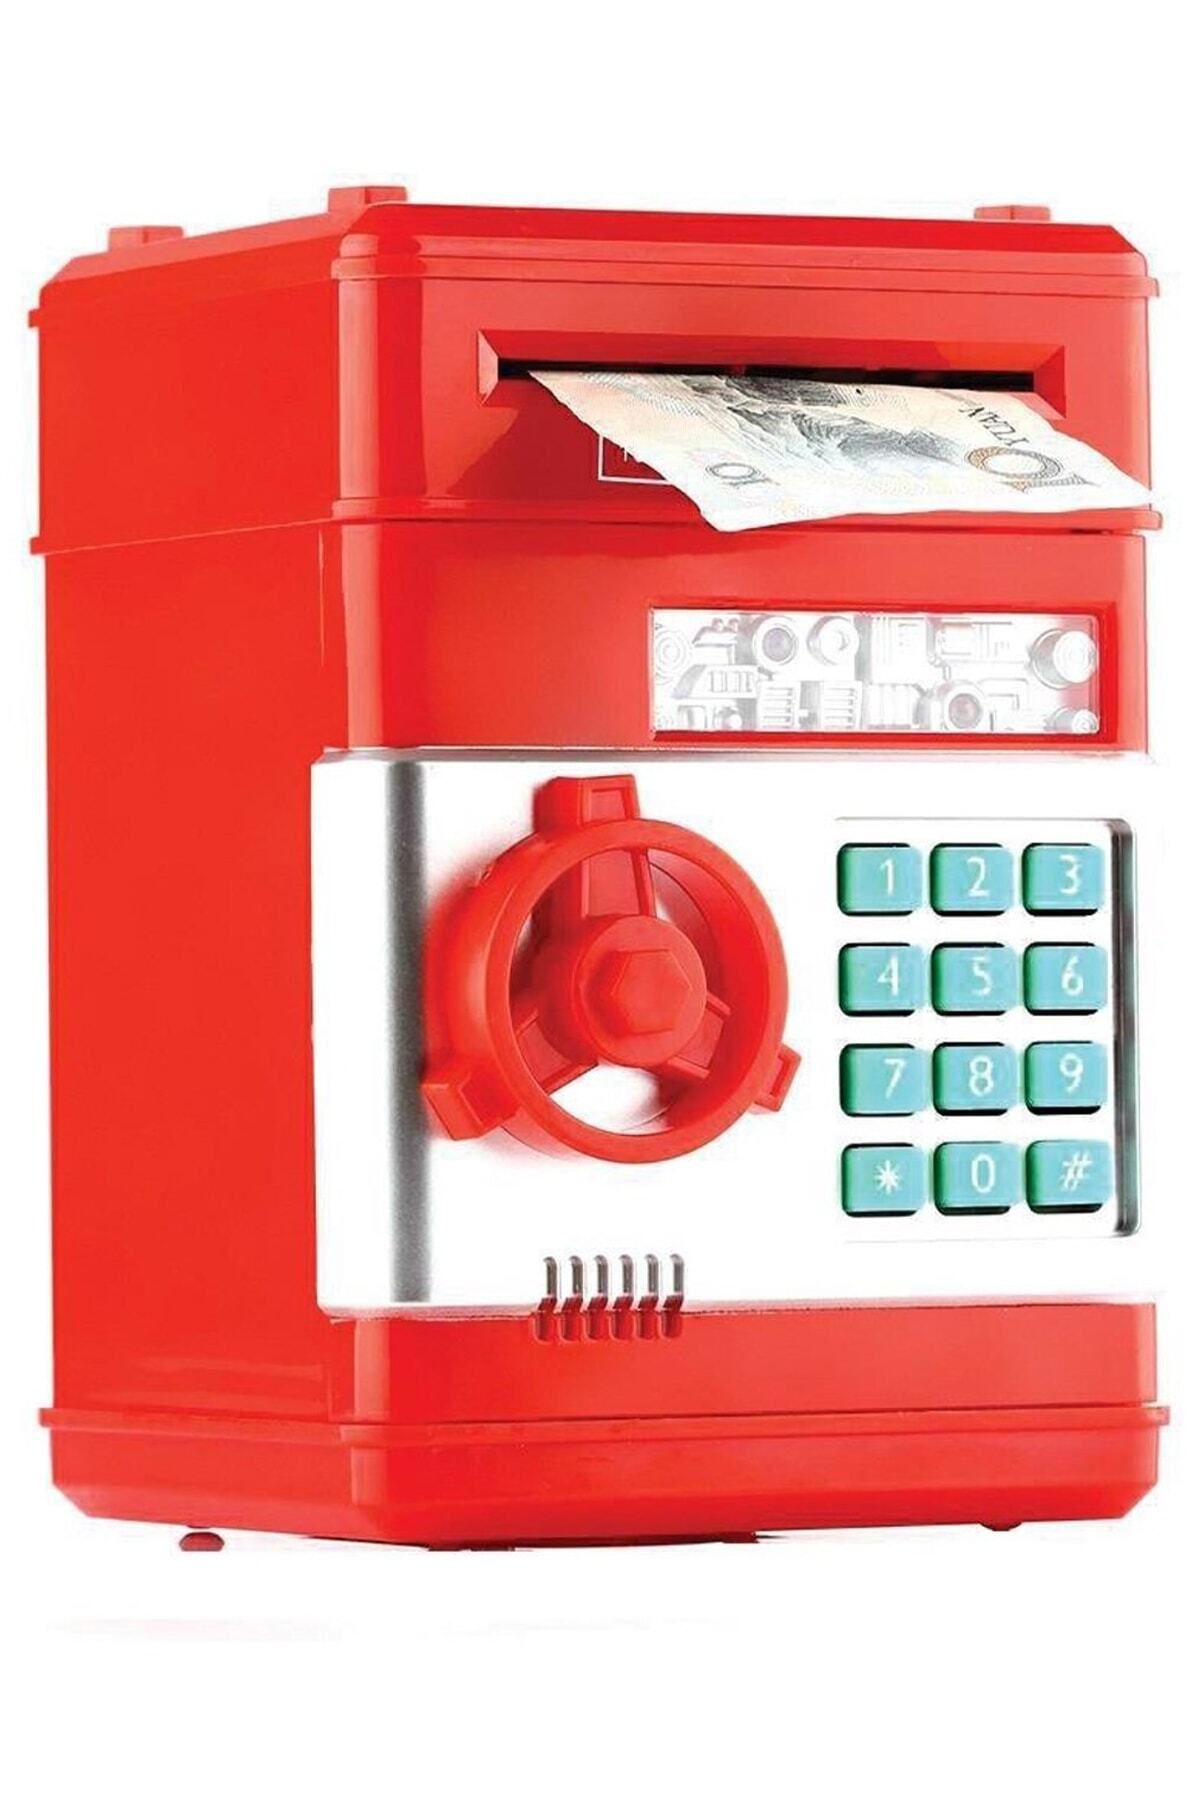 Genel Markalar Şifreli Elektronik Kağıt Bozuk Para Atm Kasa Kumbara Kırmızı